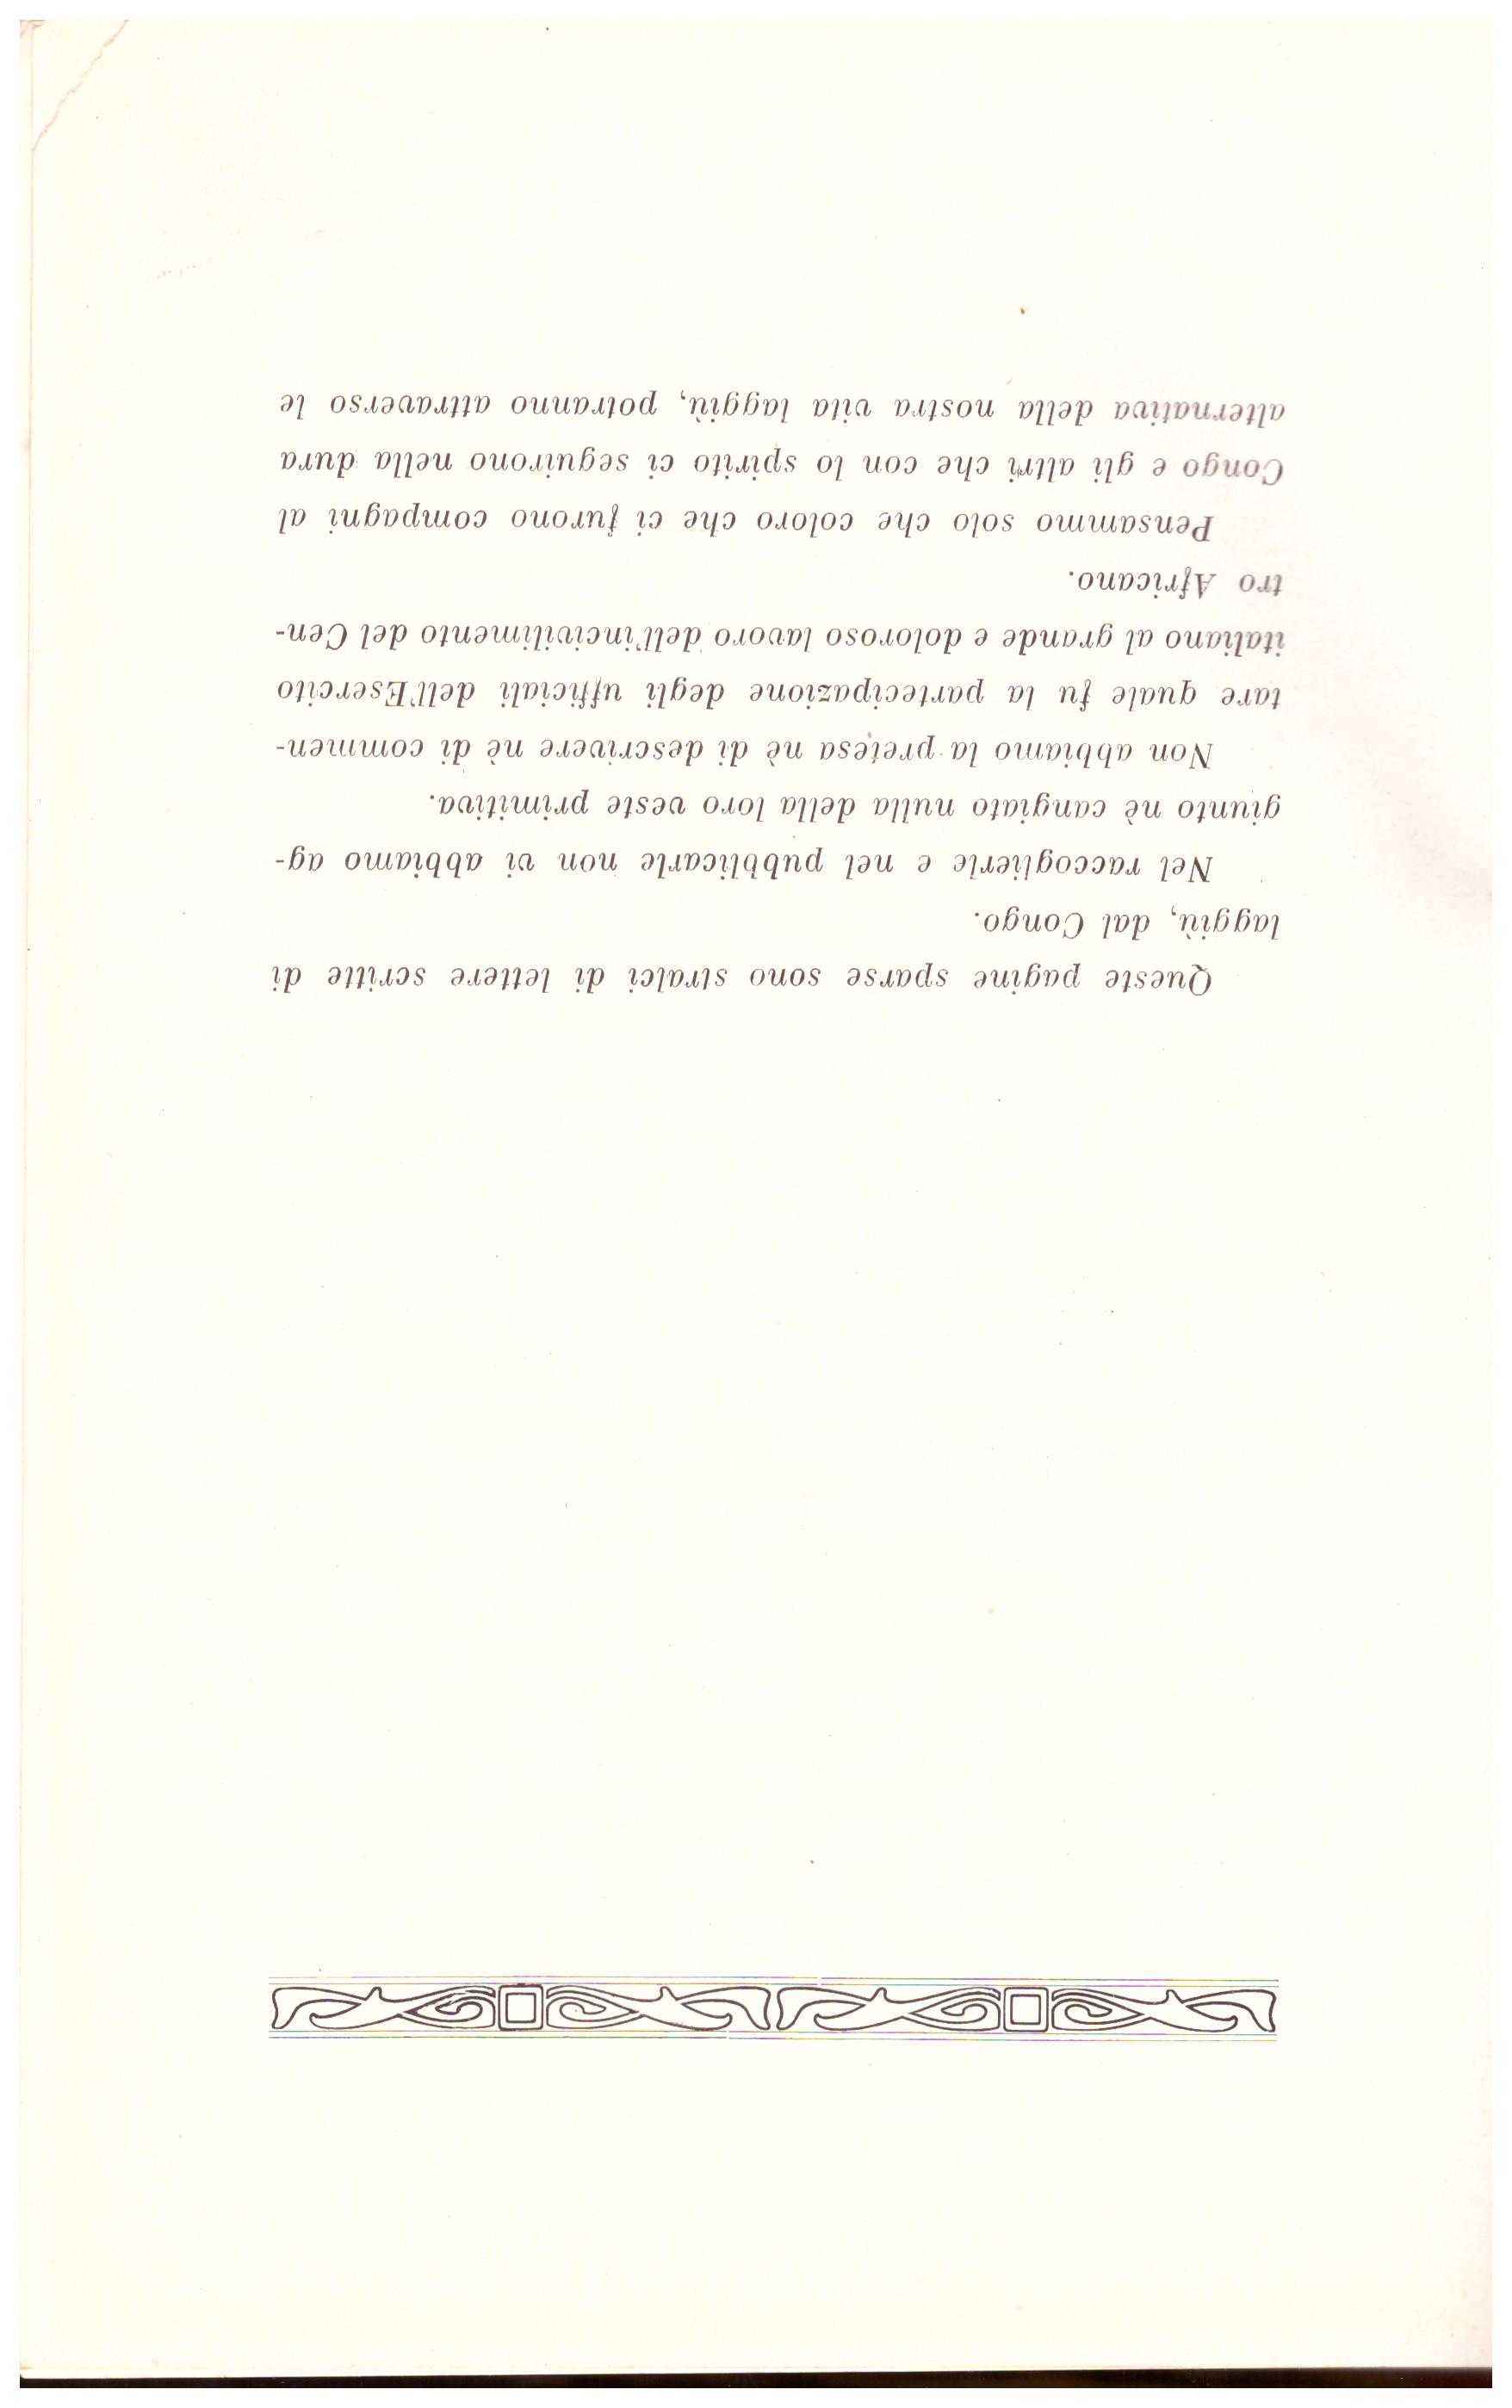 Titolo: Dal Congo  Autore: Arnaldo Cipolla, Vittorio Liprandi Editore: tipografia operaia Lodi 1905